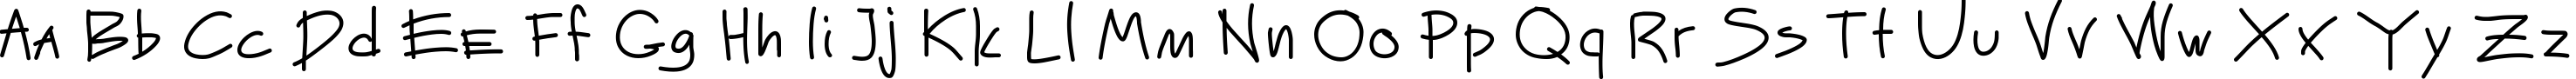 Пример написания английского алфавита шрифтом Mateur